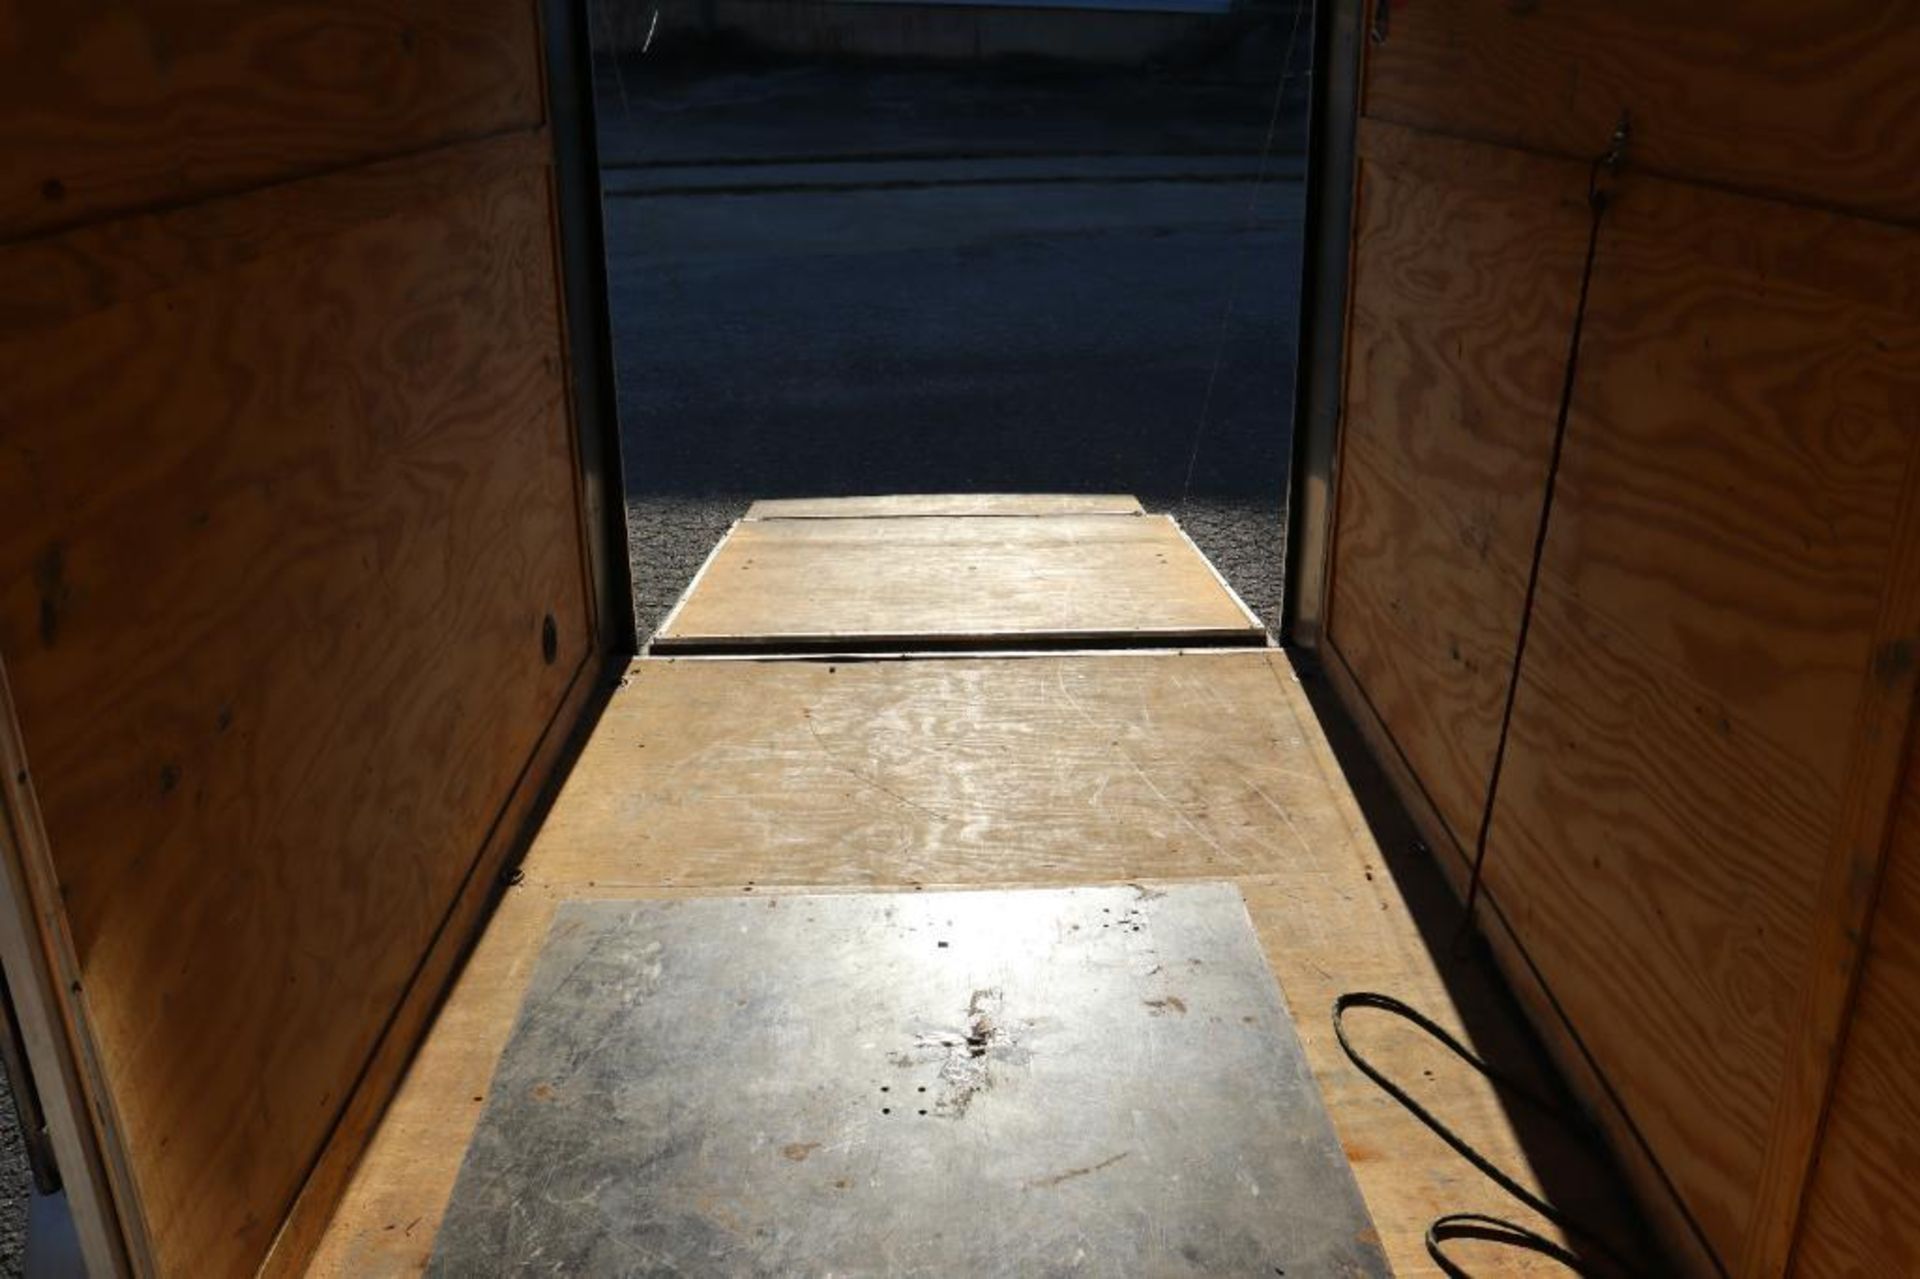 Diamond Cargo 6' x 12' V-nose trailer - Image 17 of 26